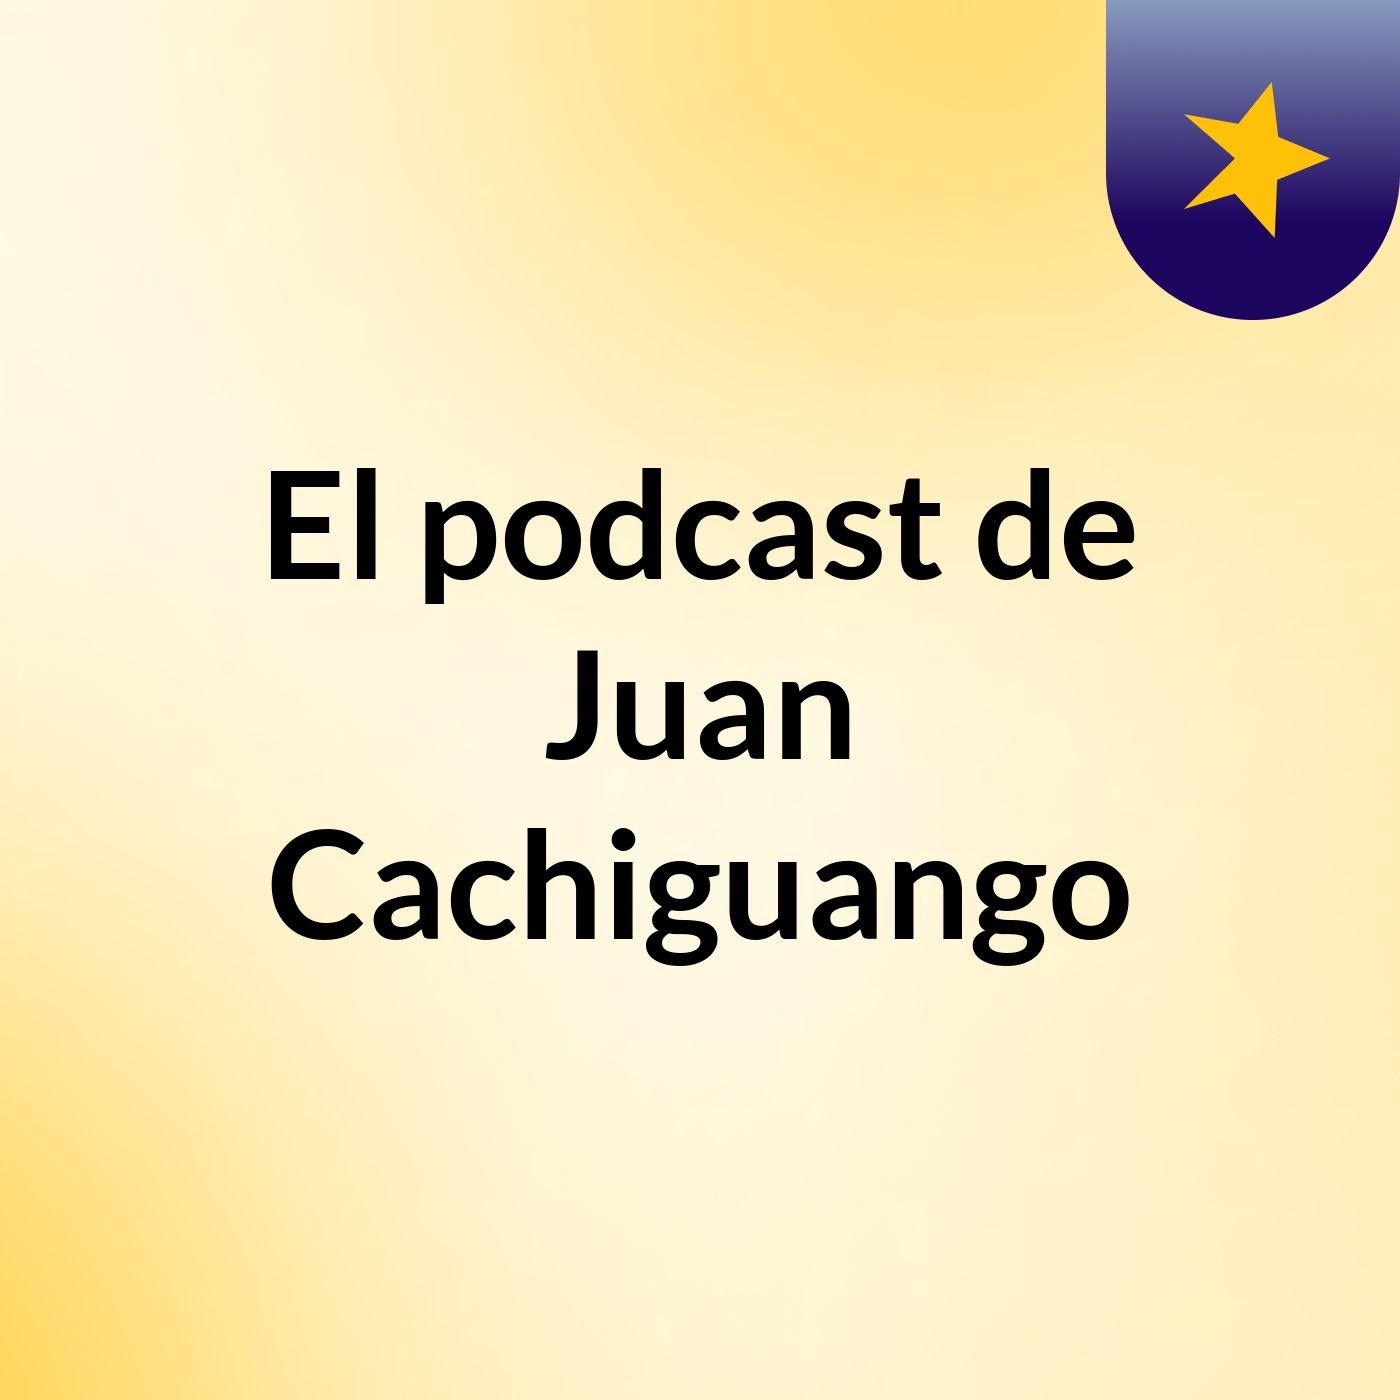 El podcast de Juan Cachiguango